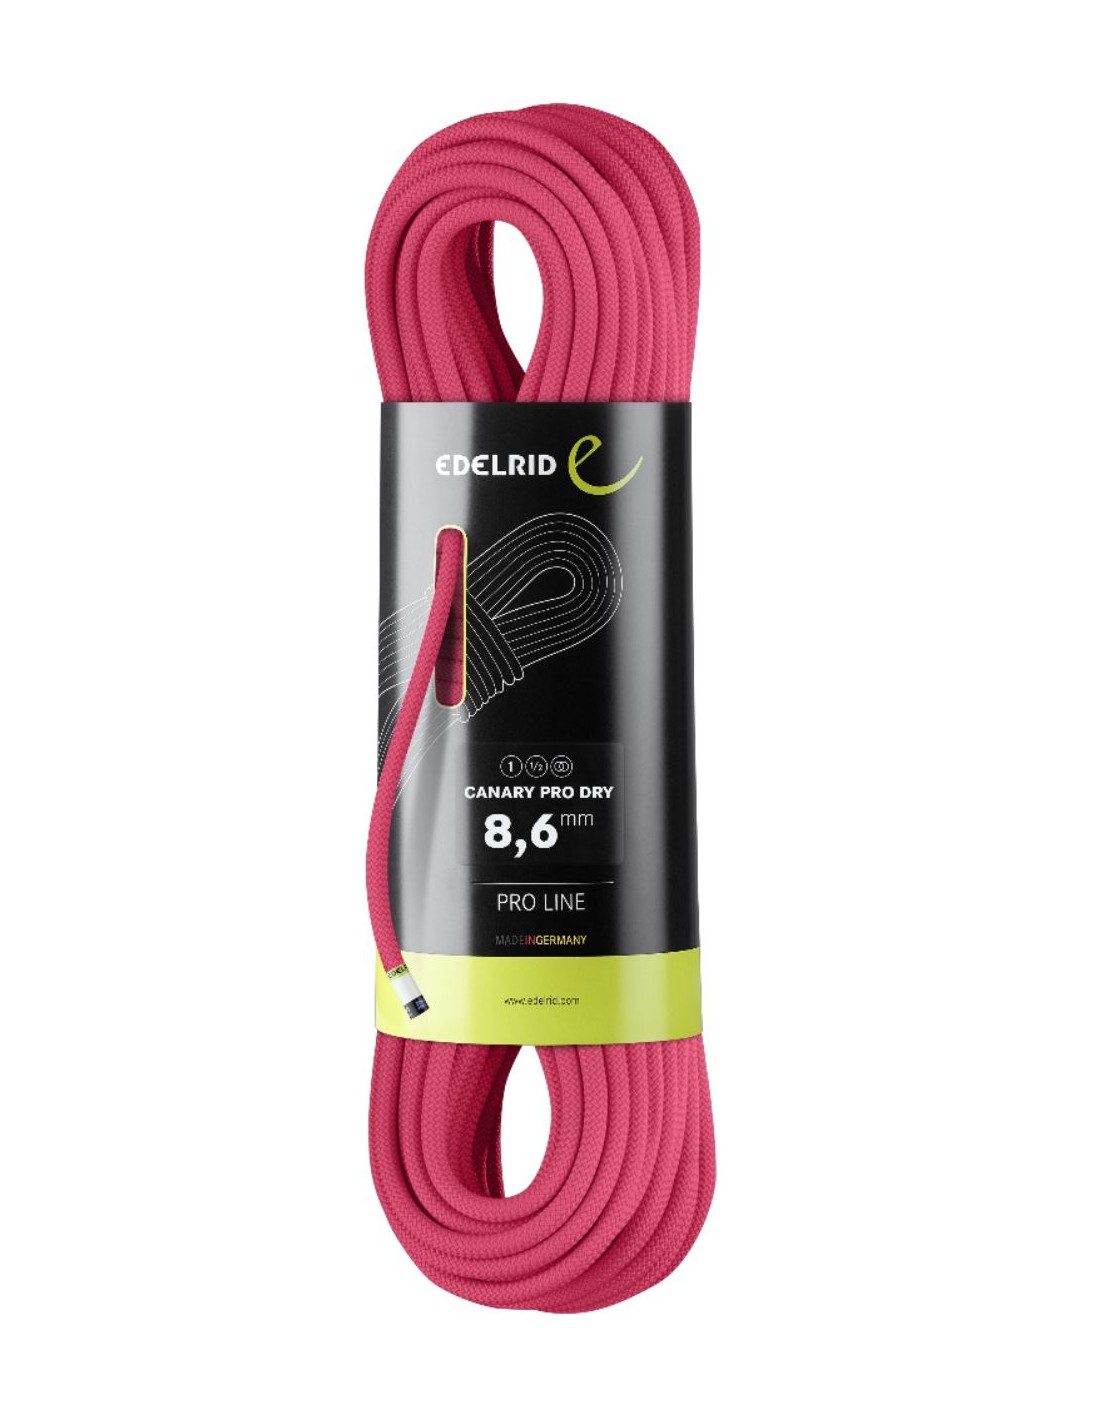 Edelrid Kletterseil Canary Pro Dry 8.6mm, pink, 50 Meter Seildurchmesser - 8.6 - 9.0 mm, Seilvariante - Einfachseil, Seilgewicht - 51 - 55 g / m, Seillänge - 50 m, Seilfarbe - Pink, von Edelrid